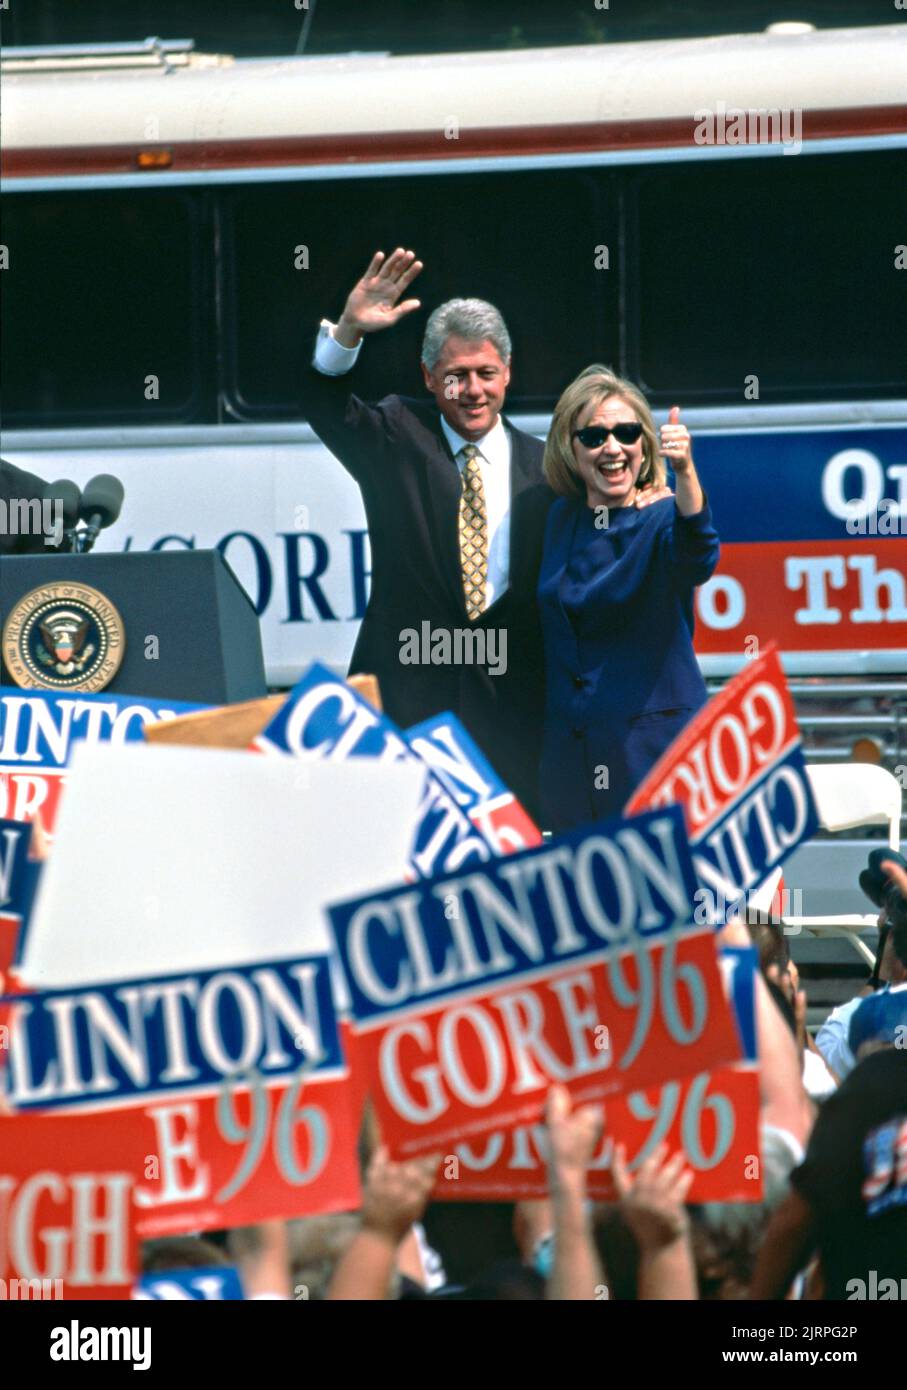 El presidente de los Estados Unidos Bill Clinton y la primera dama Hillary Clinton saludaron a multitudes de partidarios durante un mitin de campaña el 30 de agosto de 1996 en Cape Girardeau, Missouri. Clinton se detuvo en la comunidad del Río Mississippi en su gira en autobús de campaña llamado el puente al siglo 21st. Foto de stock